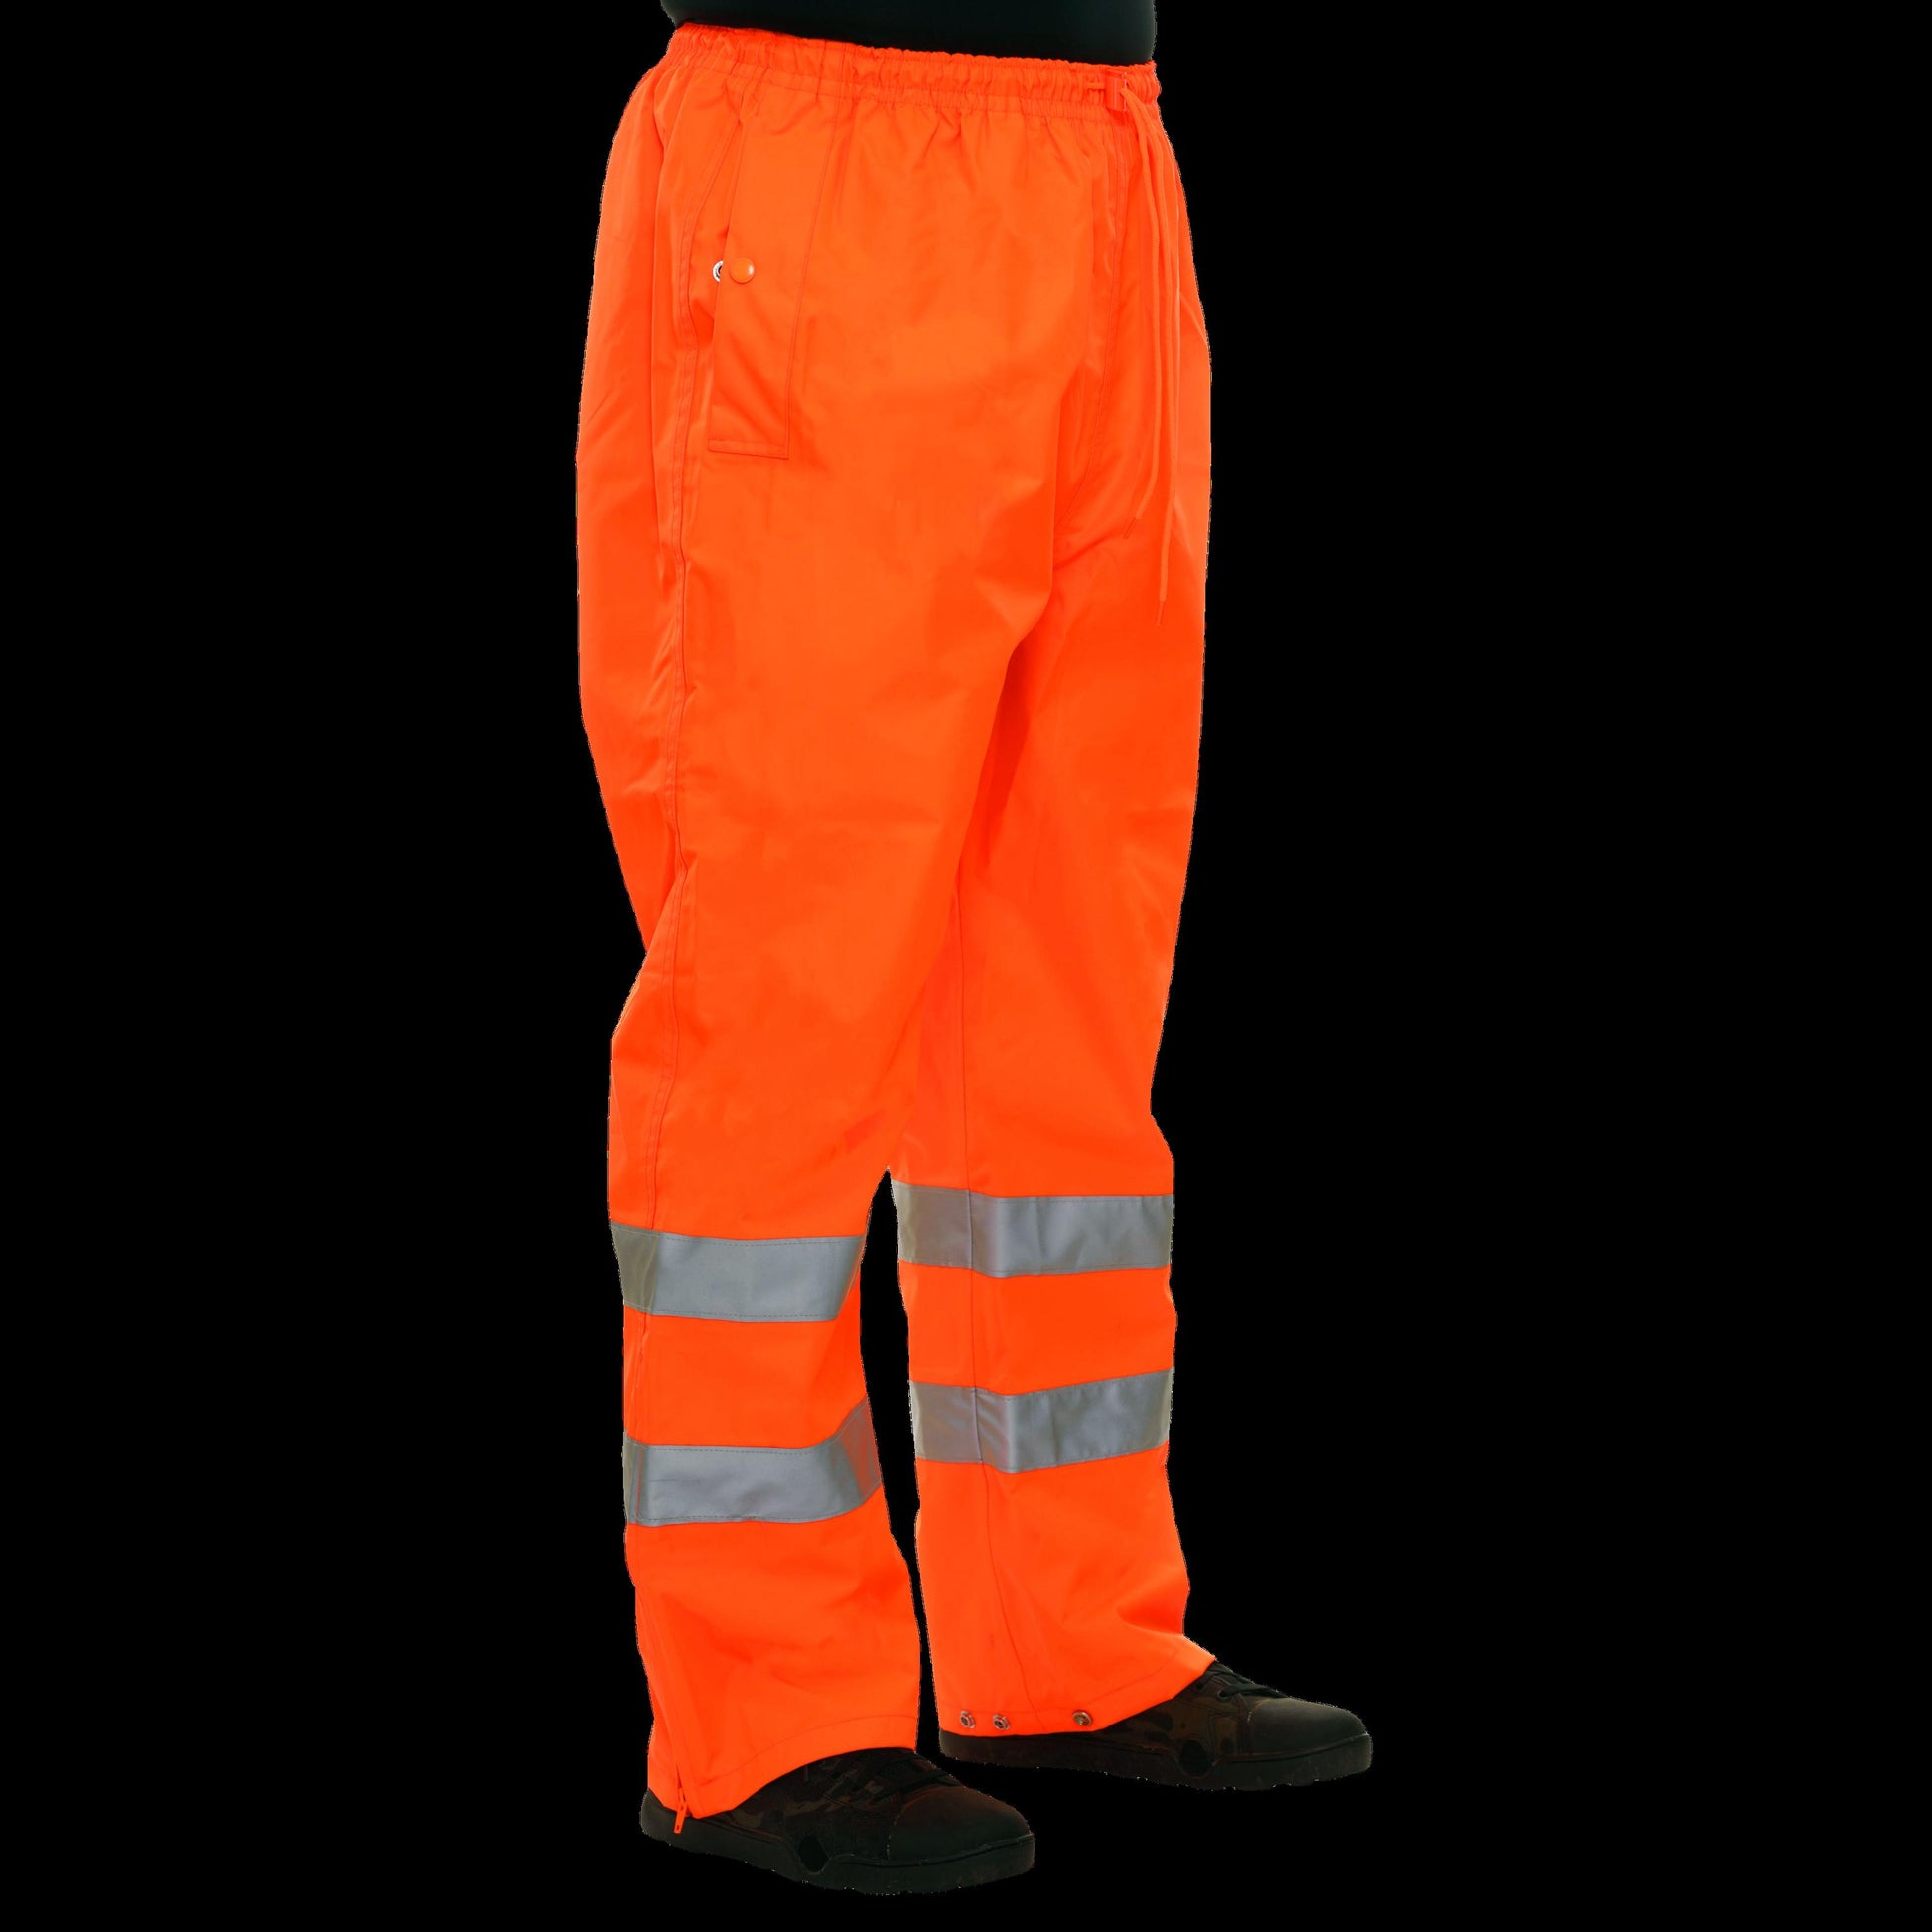 700STOR Safety Pants: Orange Hi Vis Waterproof 5X